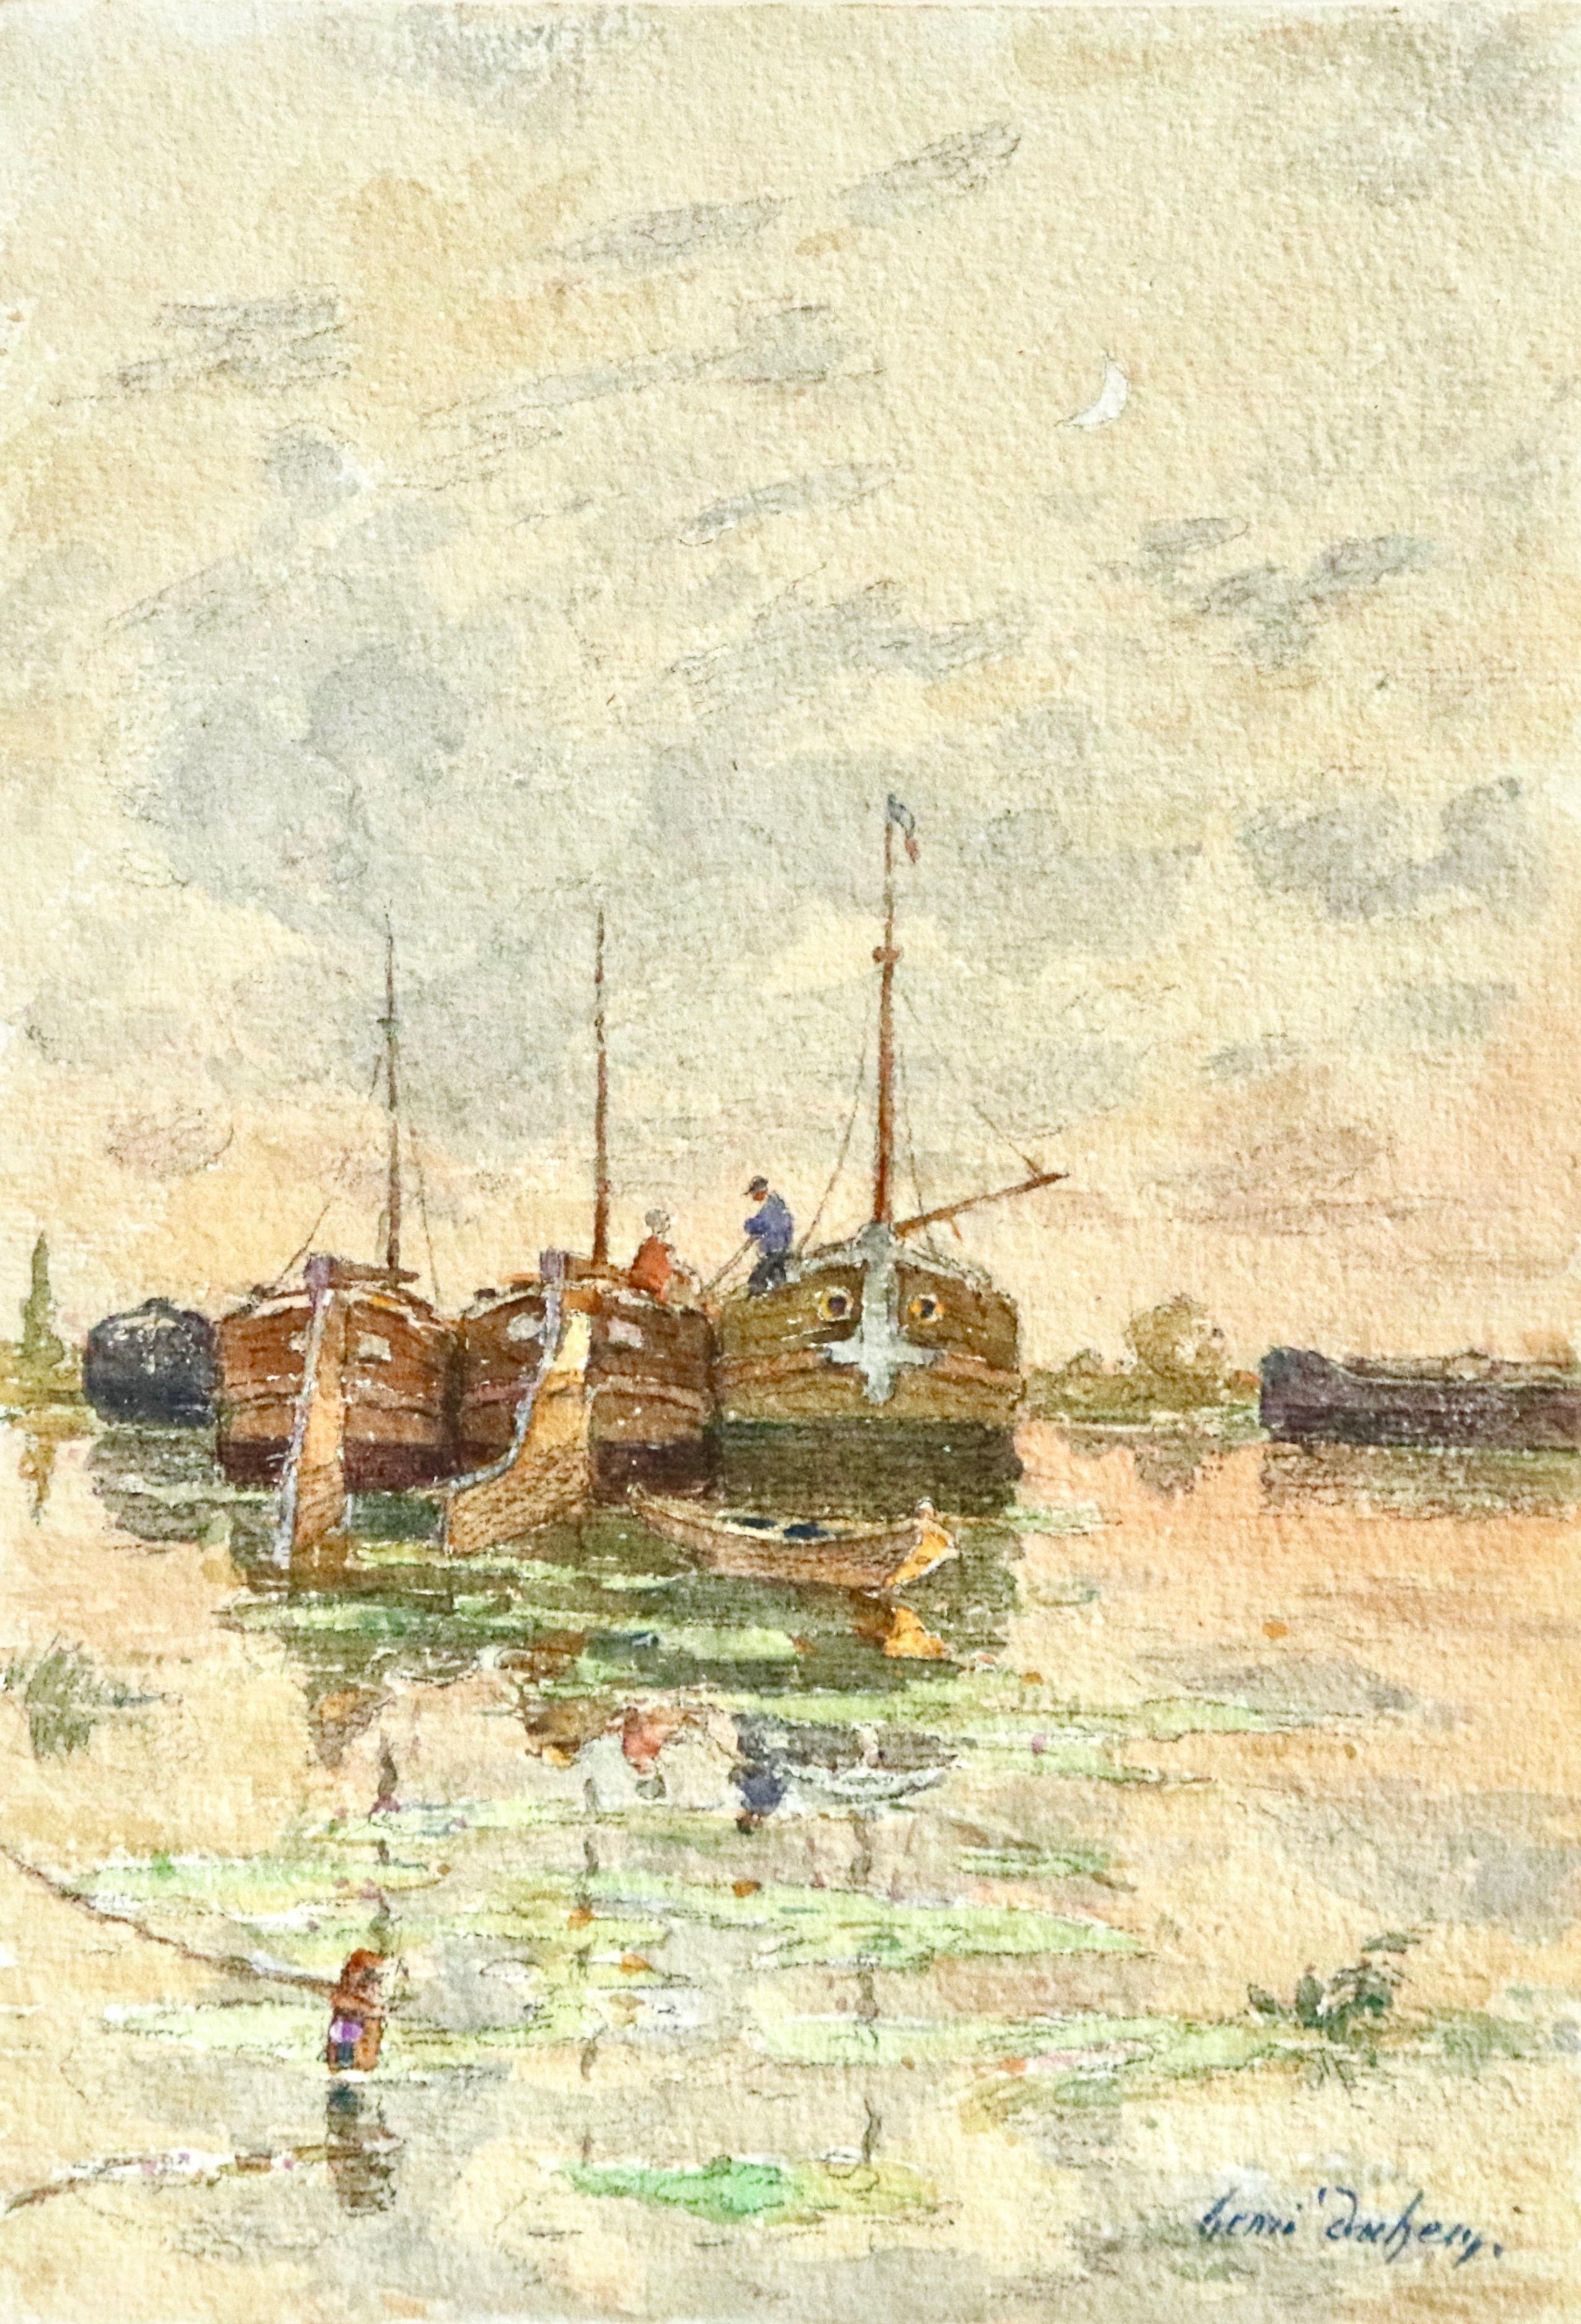 On the Barges - Aquarelle du XIXe siècle, Figures sur des bateaux sur une rivière - Henri Duhem